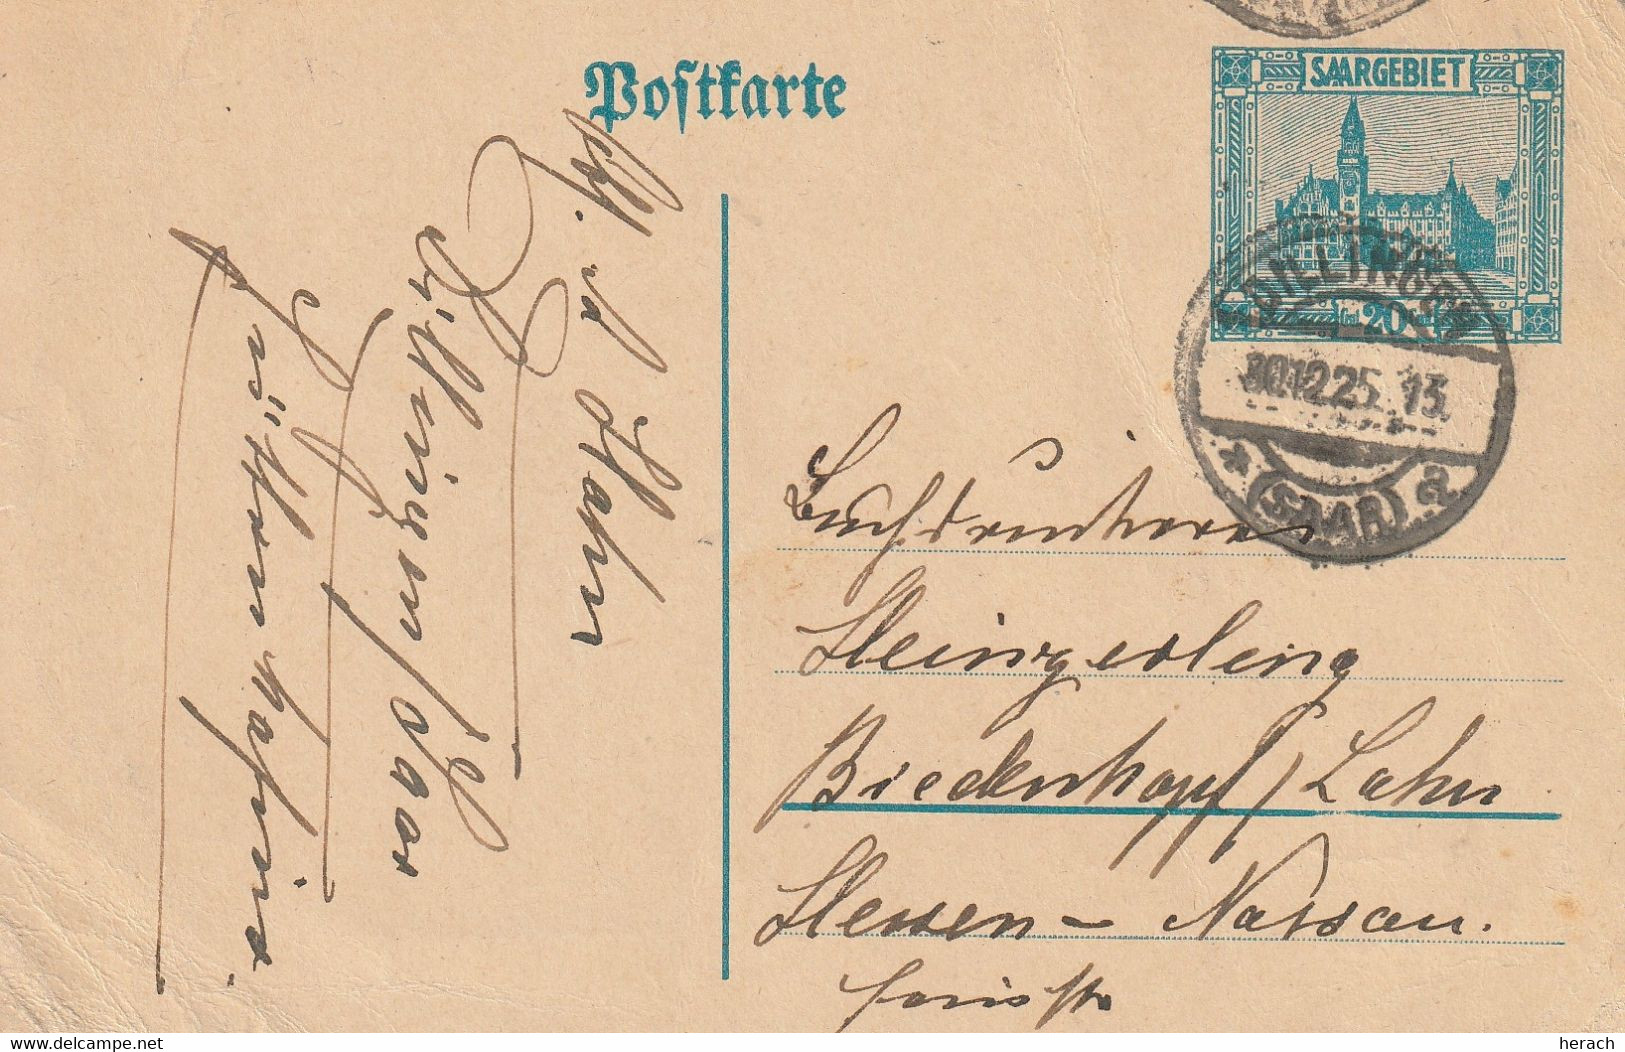 Sarre Entier Postal Dillingen 1925 - Entiers Postaux